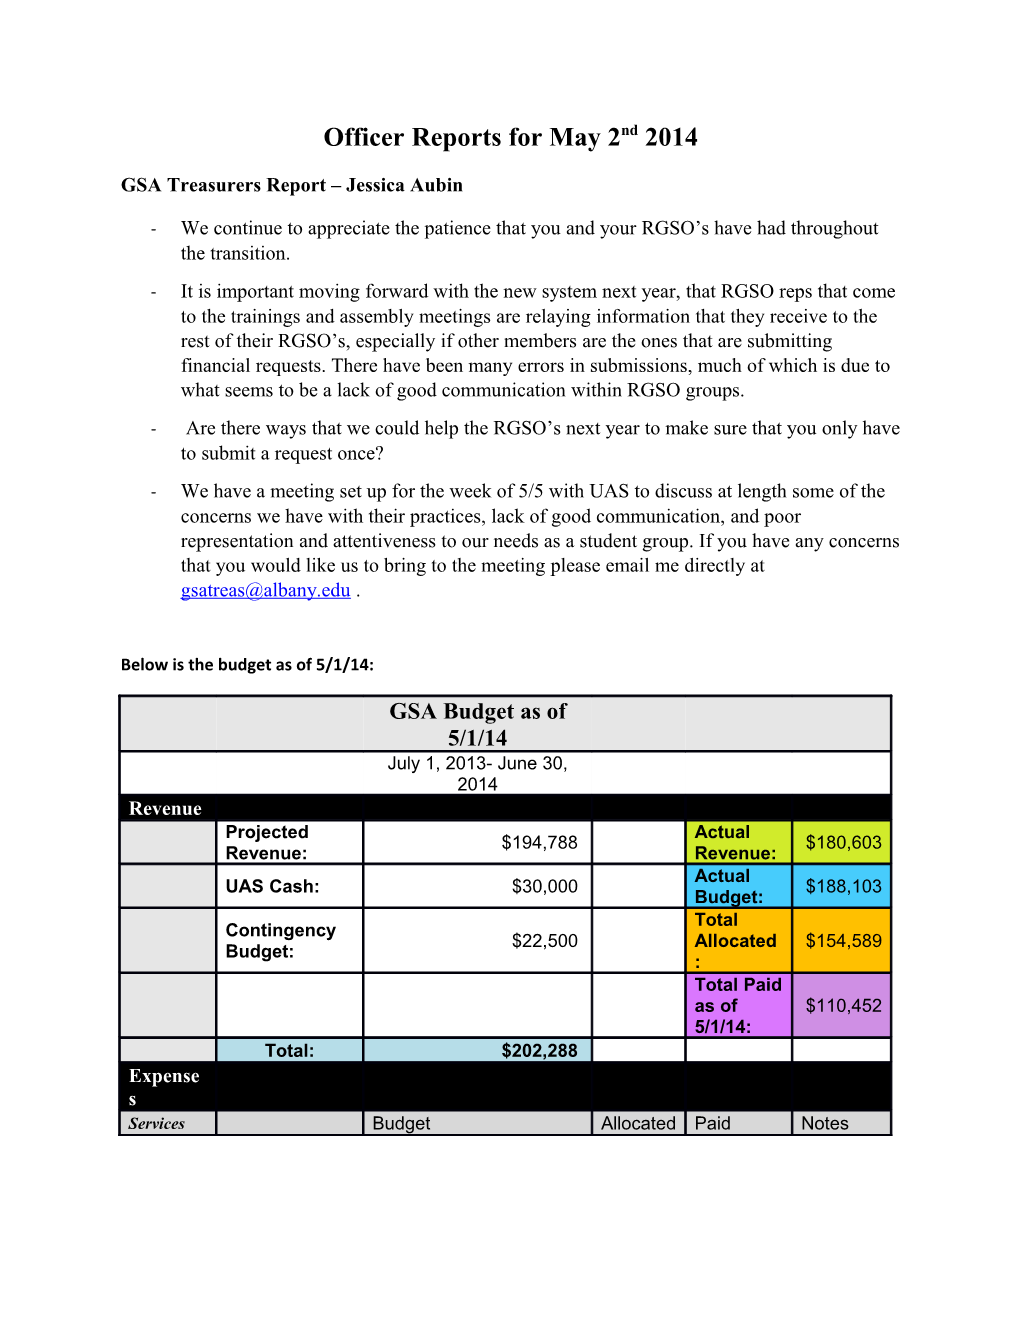 GSA Treasurers Report Jessica Aubin